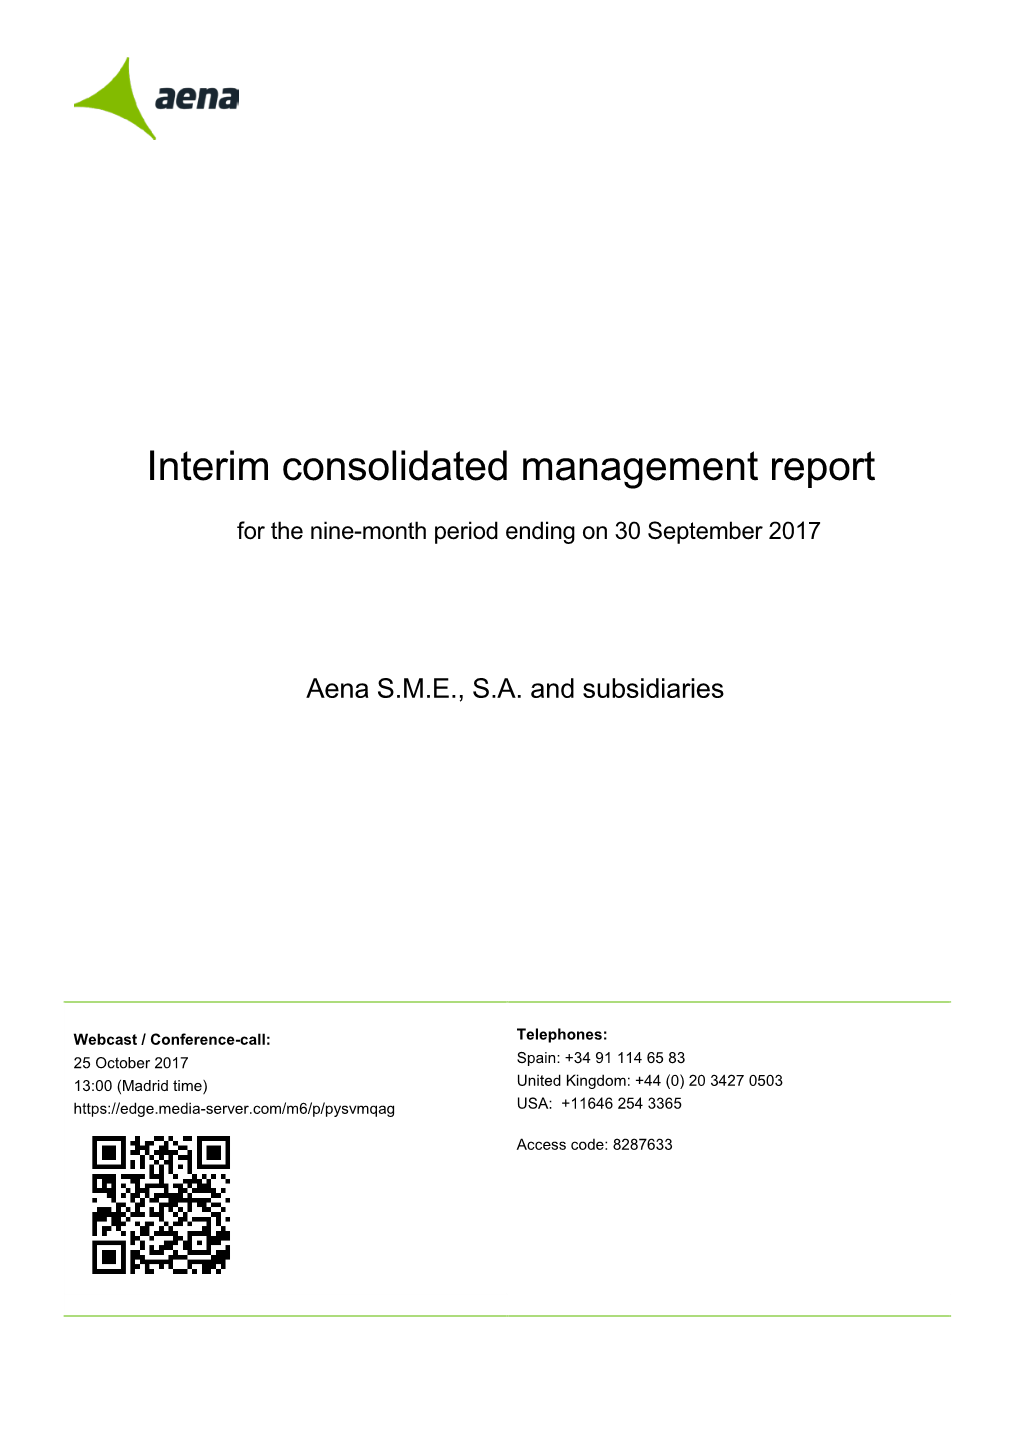 Interim Consolidated Management Report